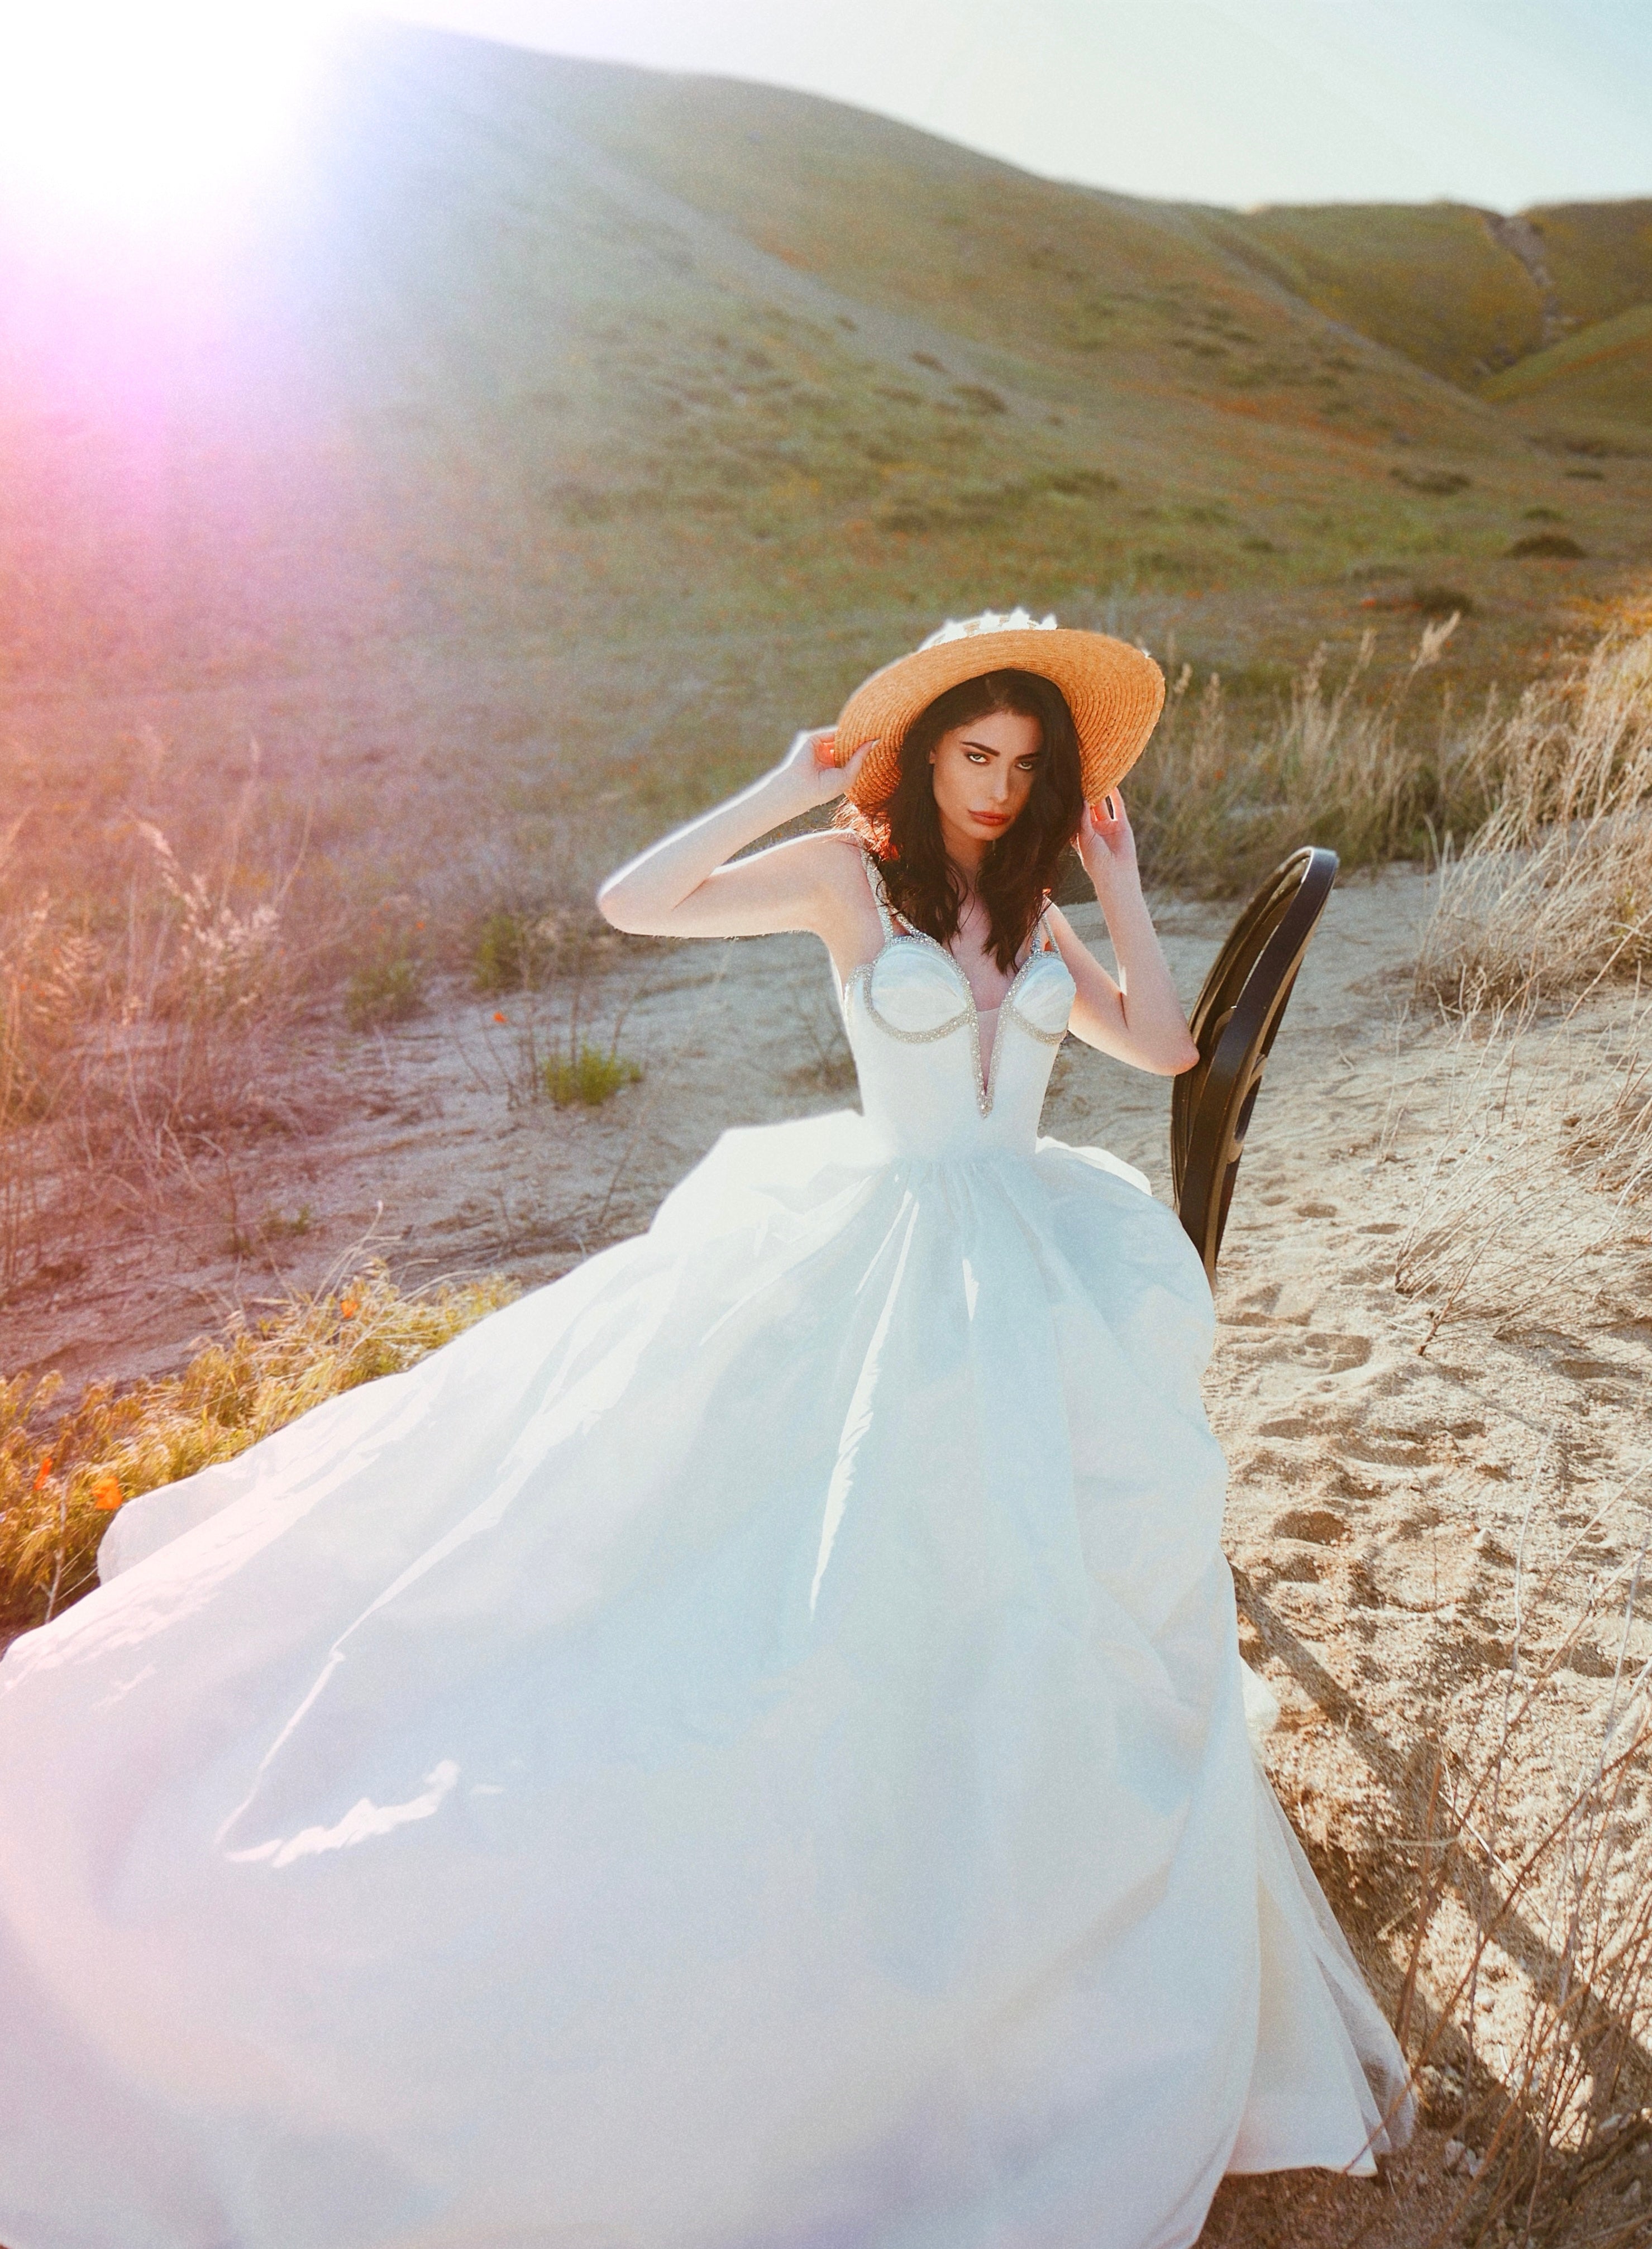 Romantic and timeless silk taffeta corset ball gown wedding dress by Lauren Elaine